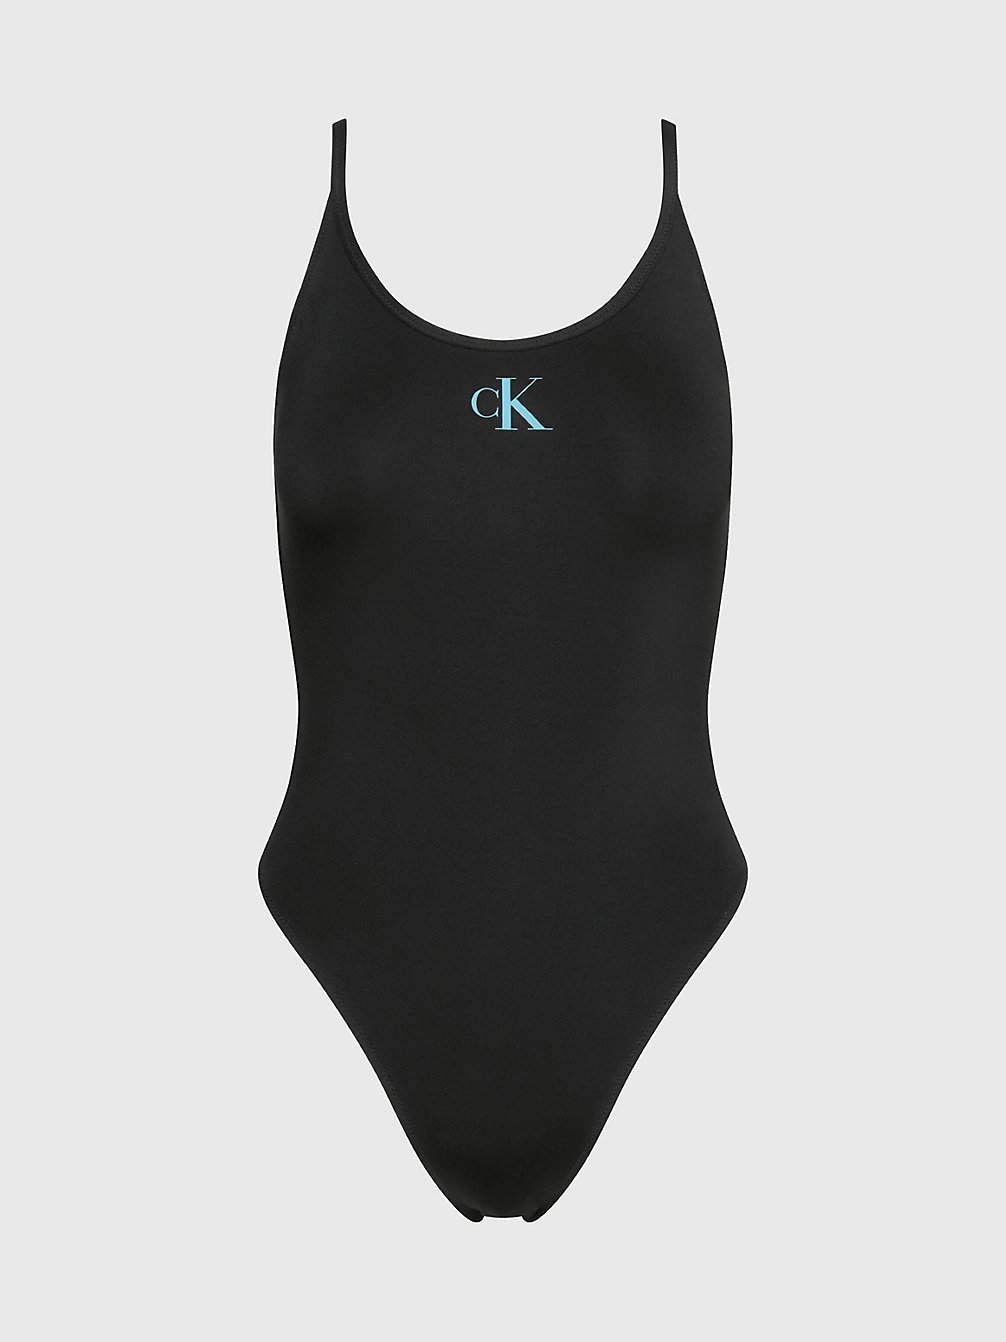 PVH BLACK Swimsuit - CK Monogram undefined women Calvin Klein